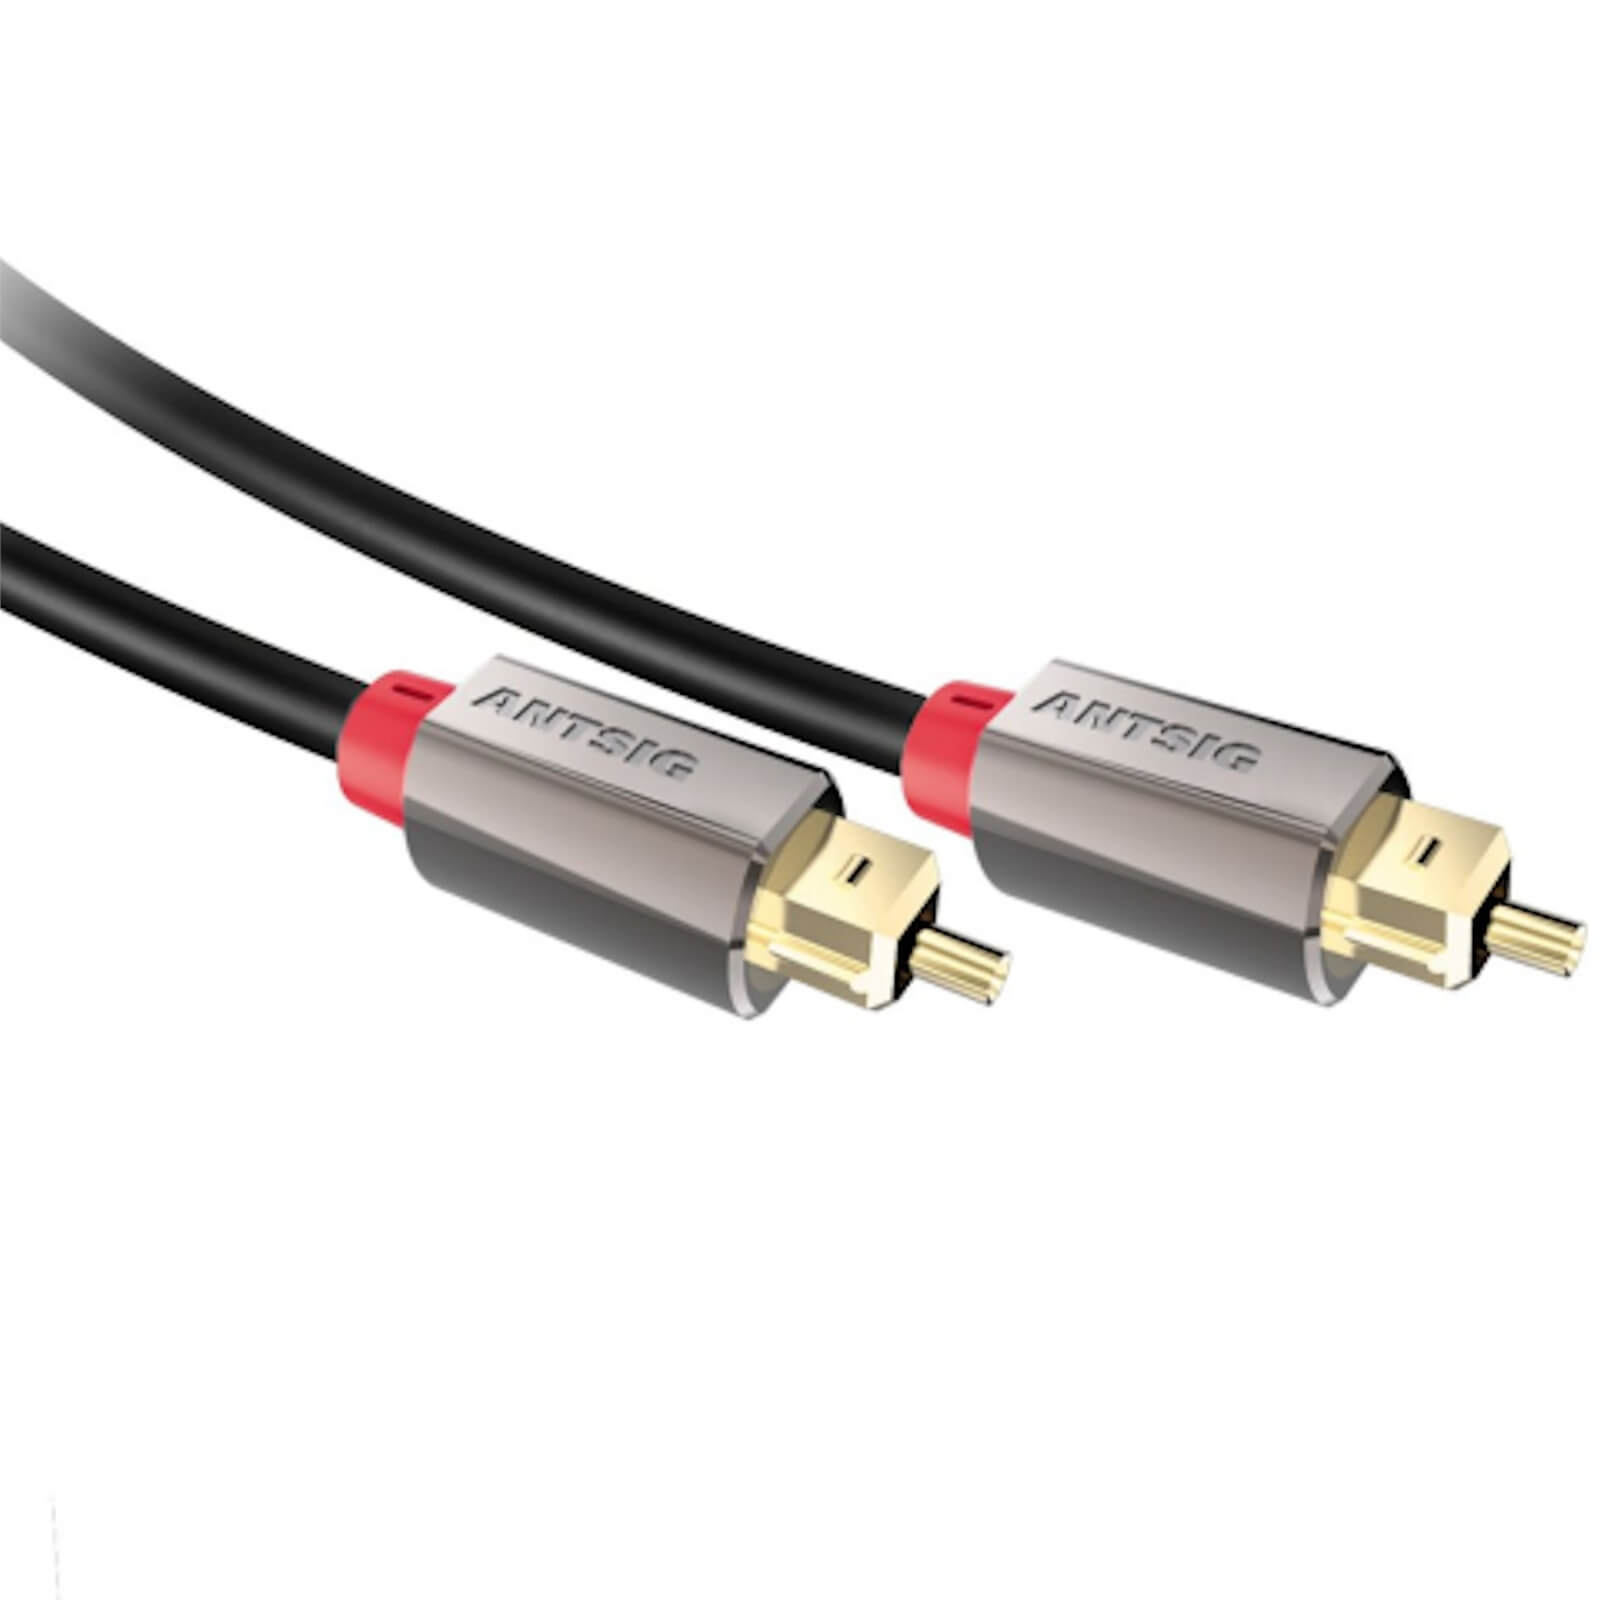 Antsig Toslink Premium Fibre Optic Audio Cable 2m